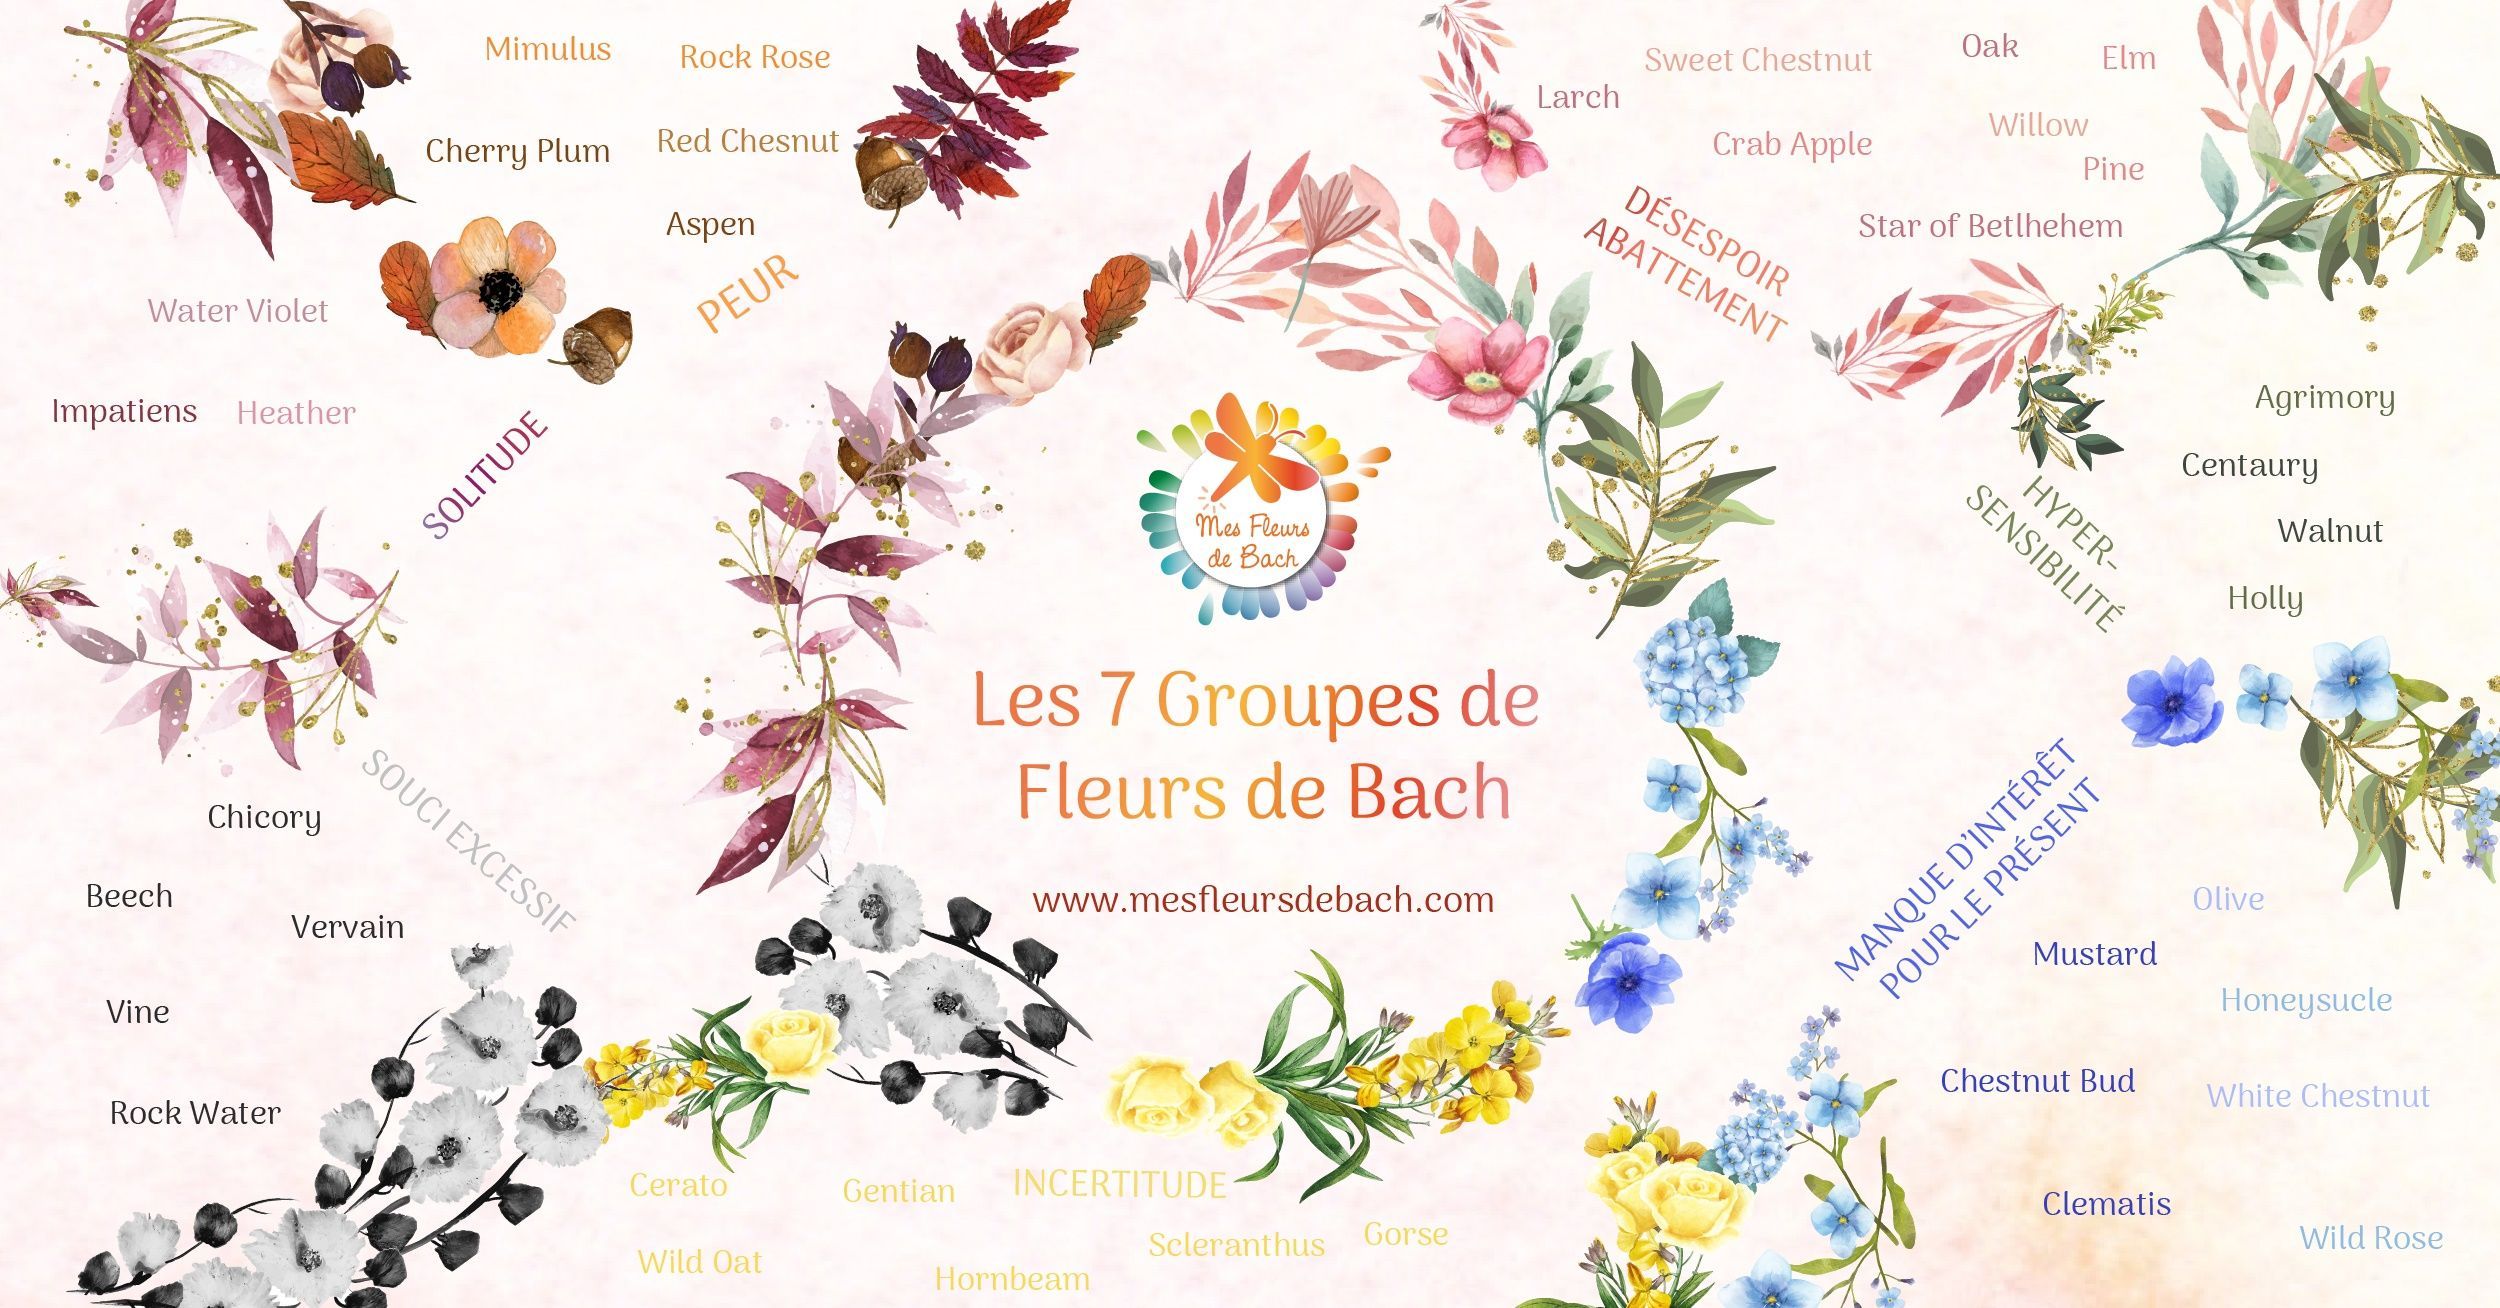 Fleurs de Bach